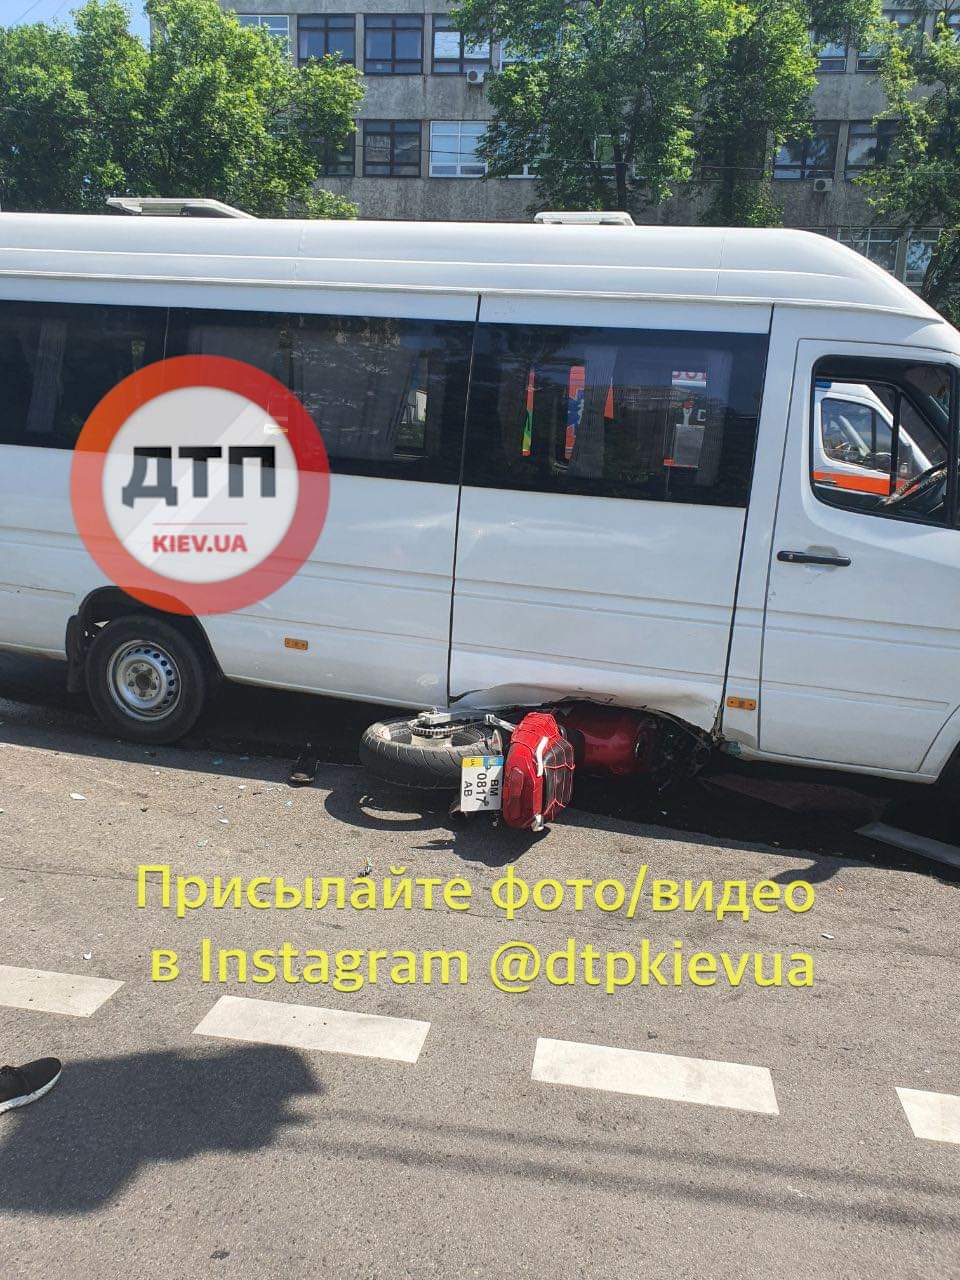 Мото ДТП в Киеве на перекрестке Васильковской и Ломоносова - мотоцикл влетел под маршрутку